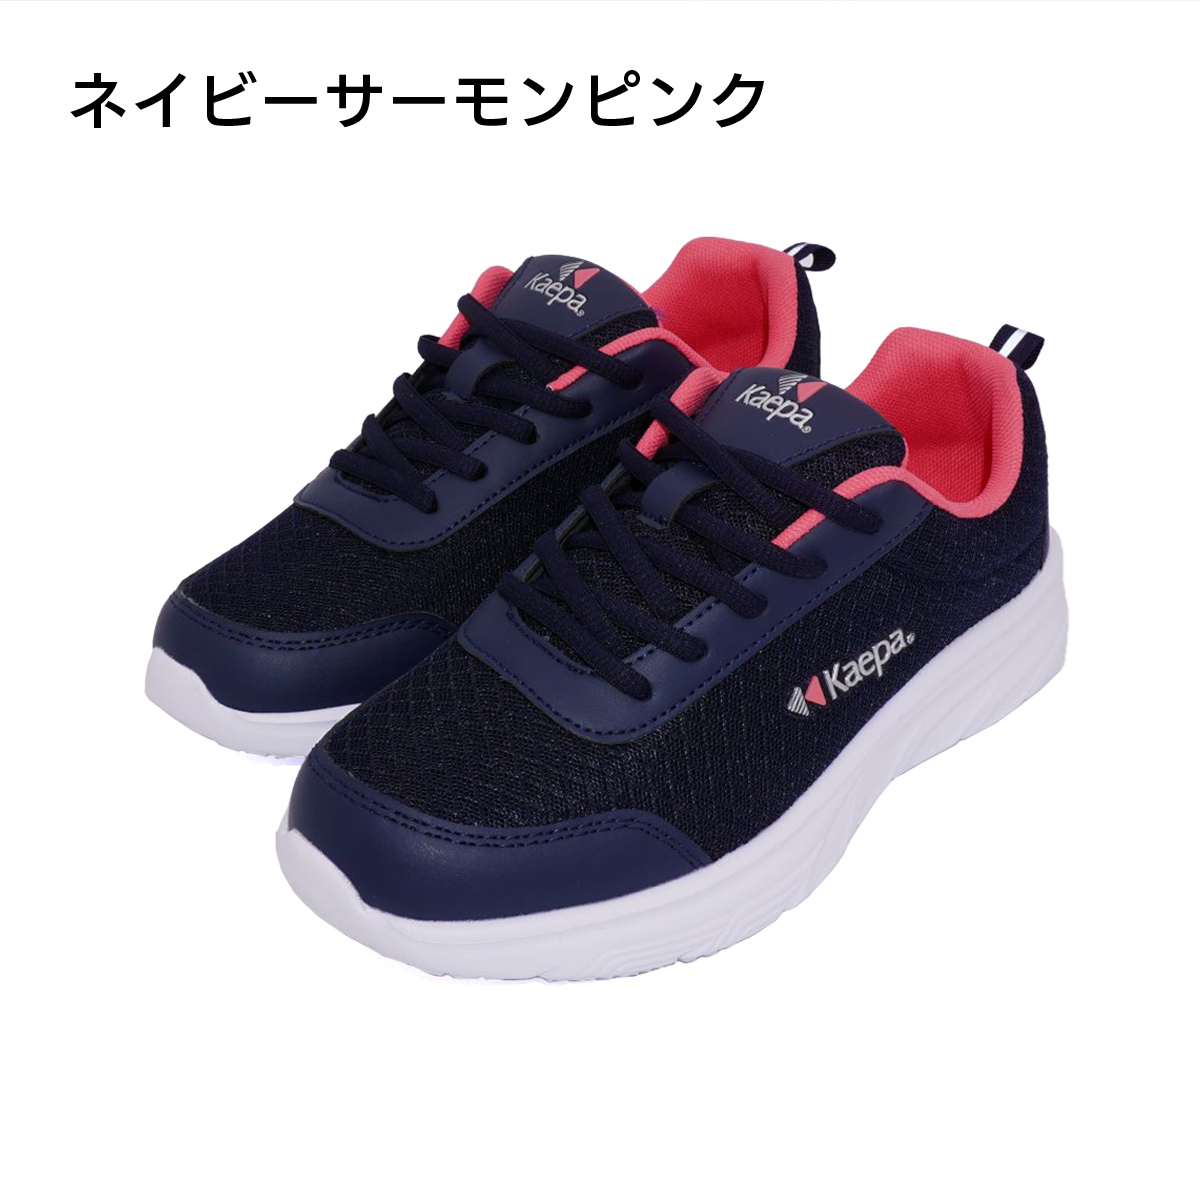 お値下げ kaepa スニーカー 運動靴 sneakers メンズ MENS www